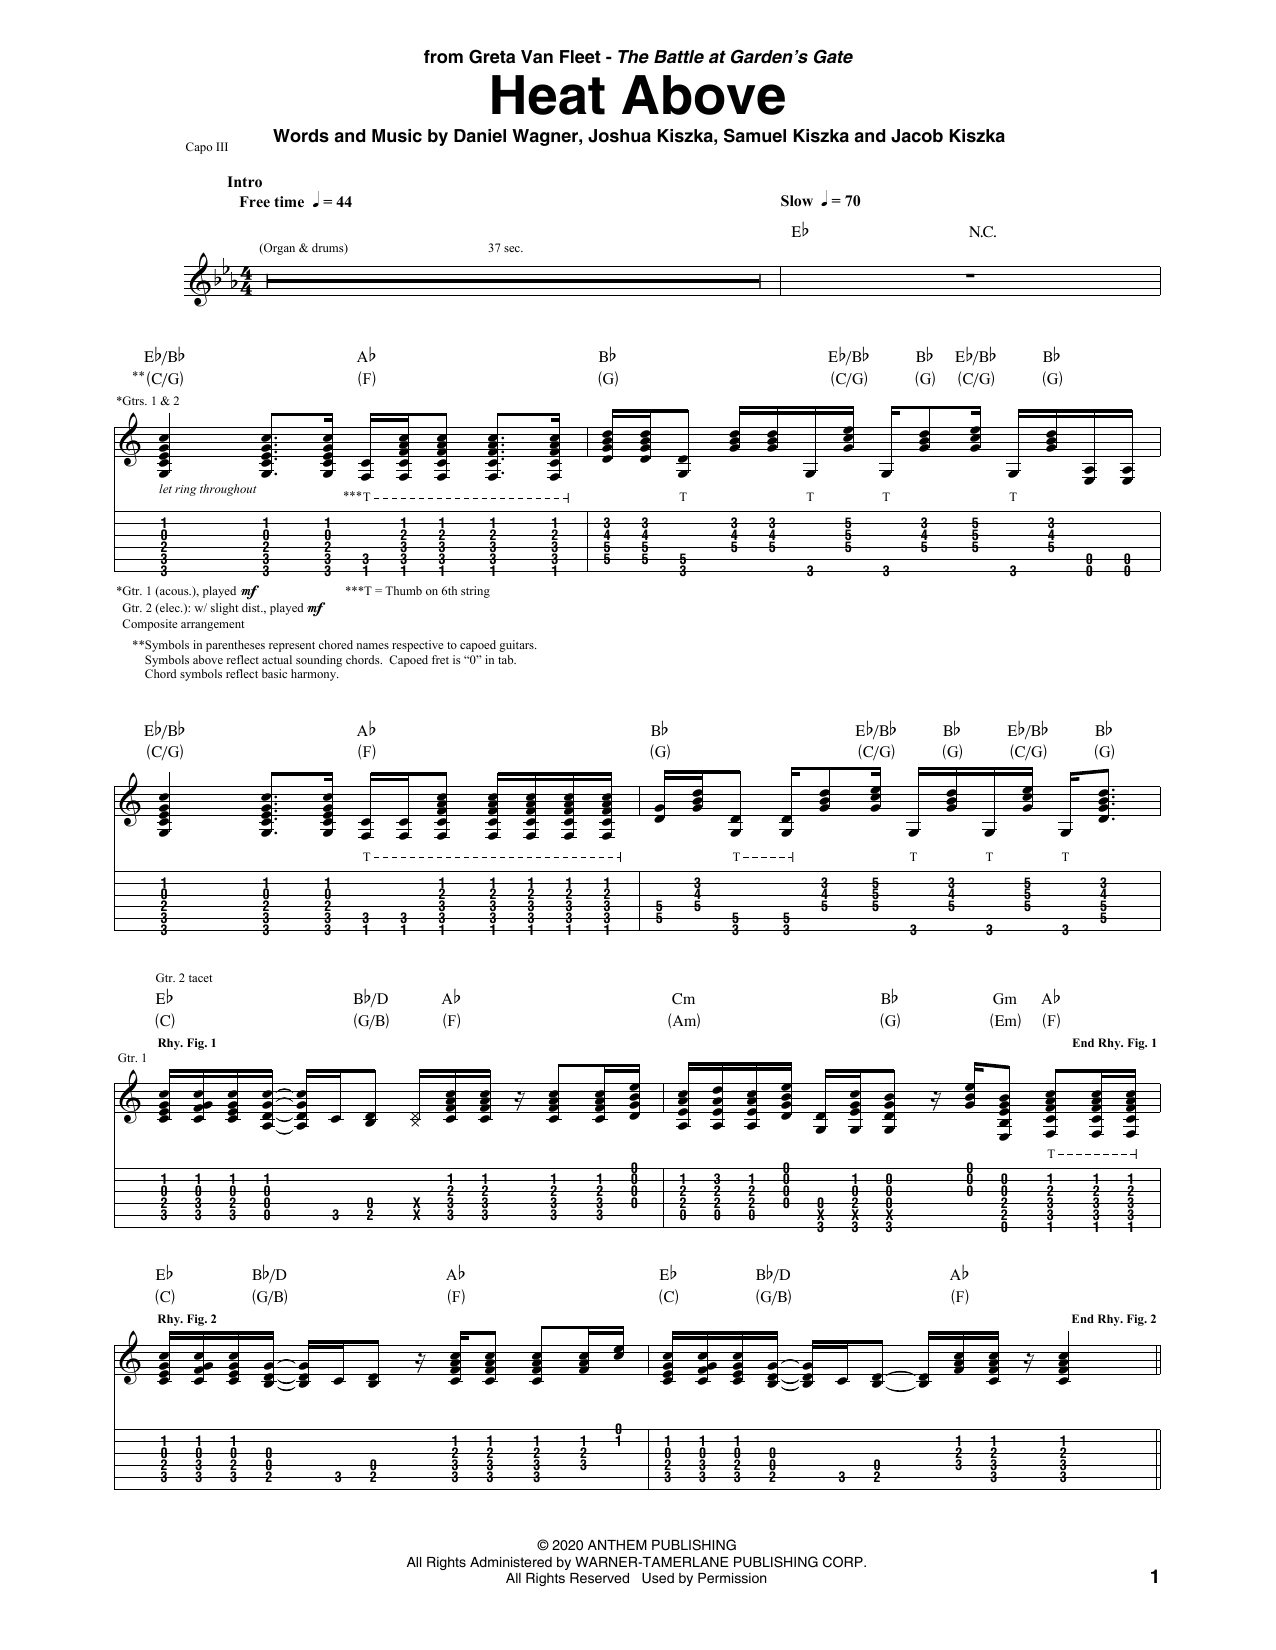 Greta Van Fleet Heat Above Sheet Music Notes & Chords for Guitar Tab - Download or Print PDF